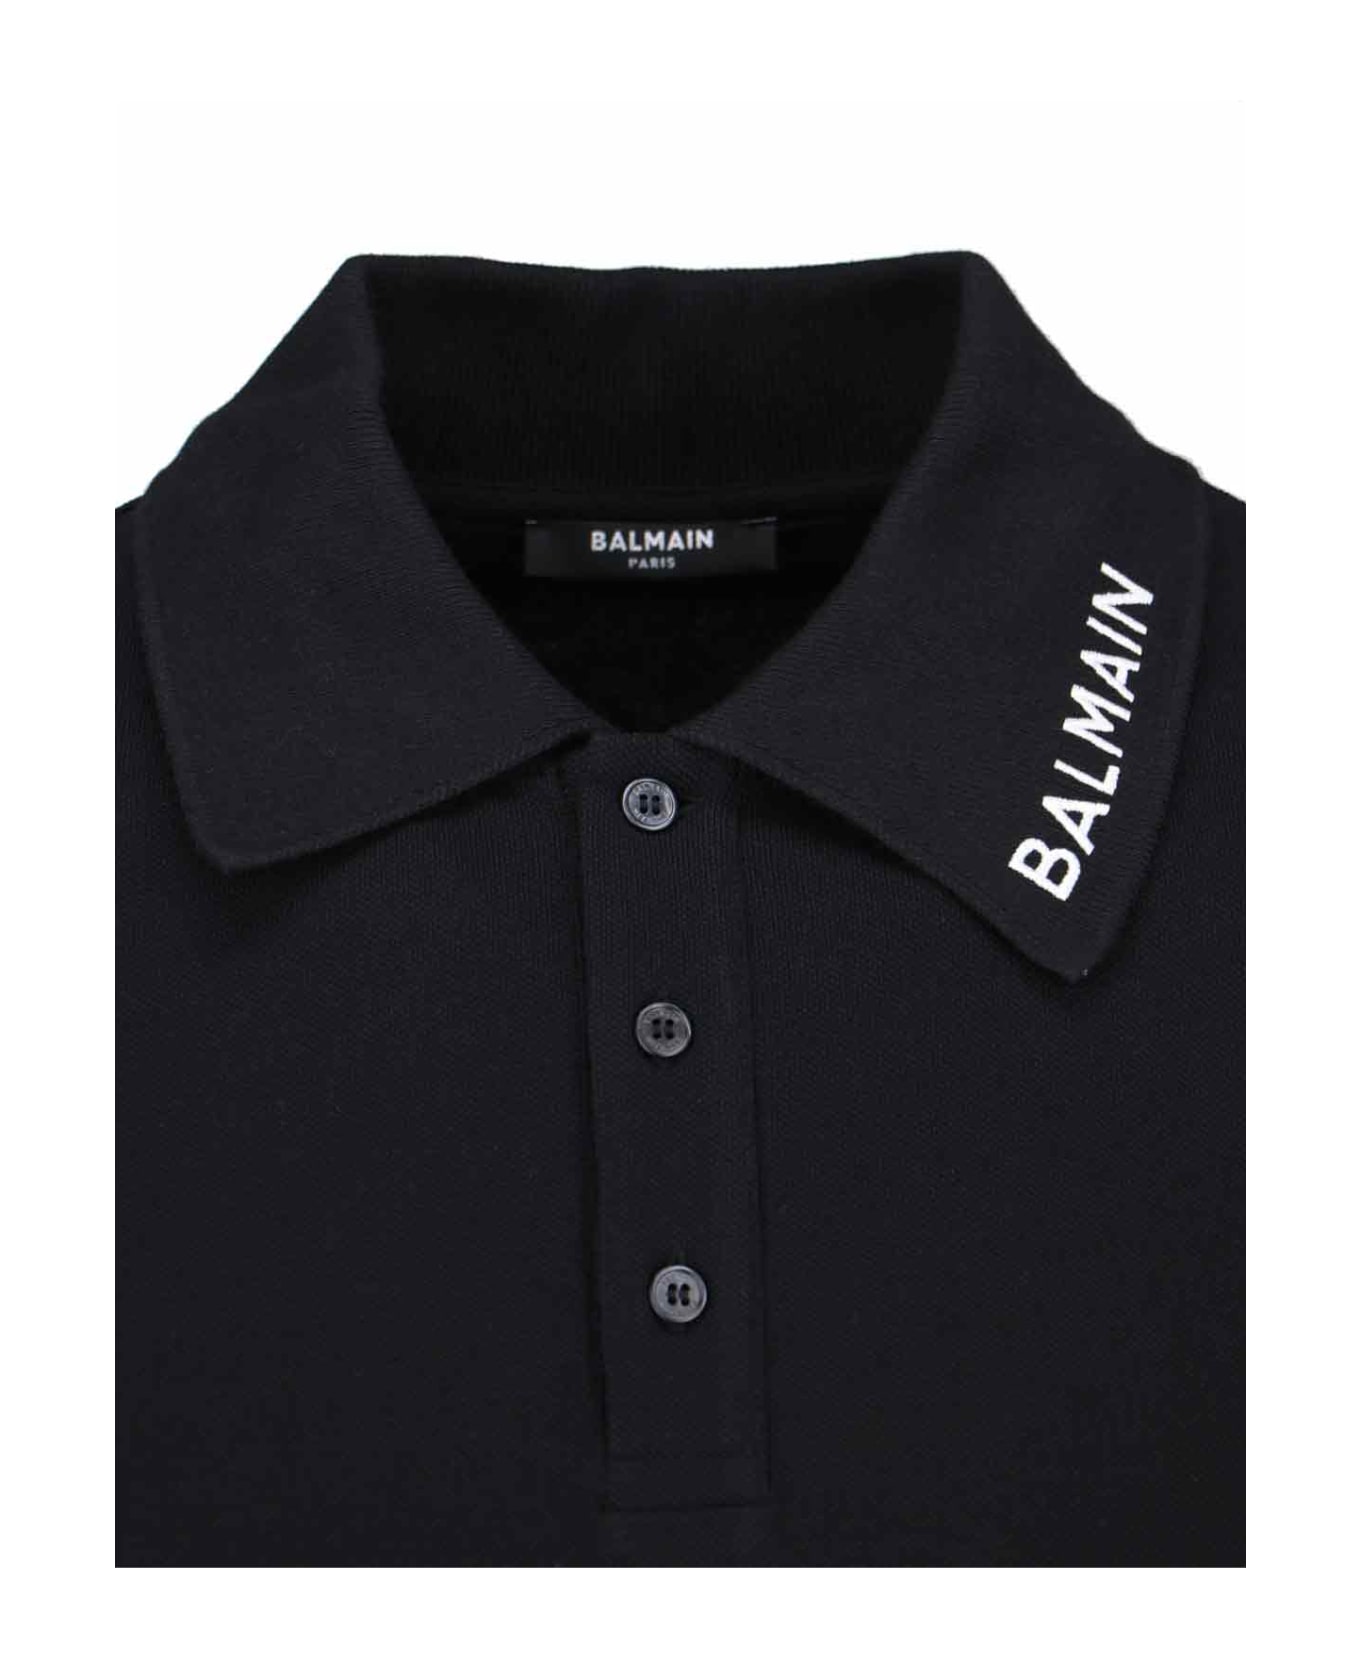 Balmain Logo Polo Shirt - Black  